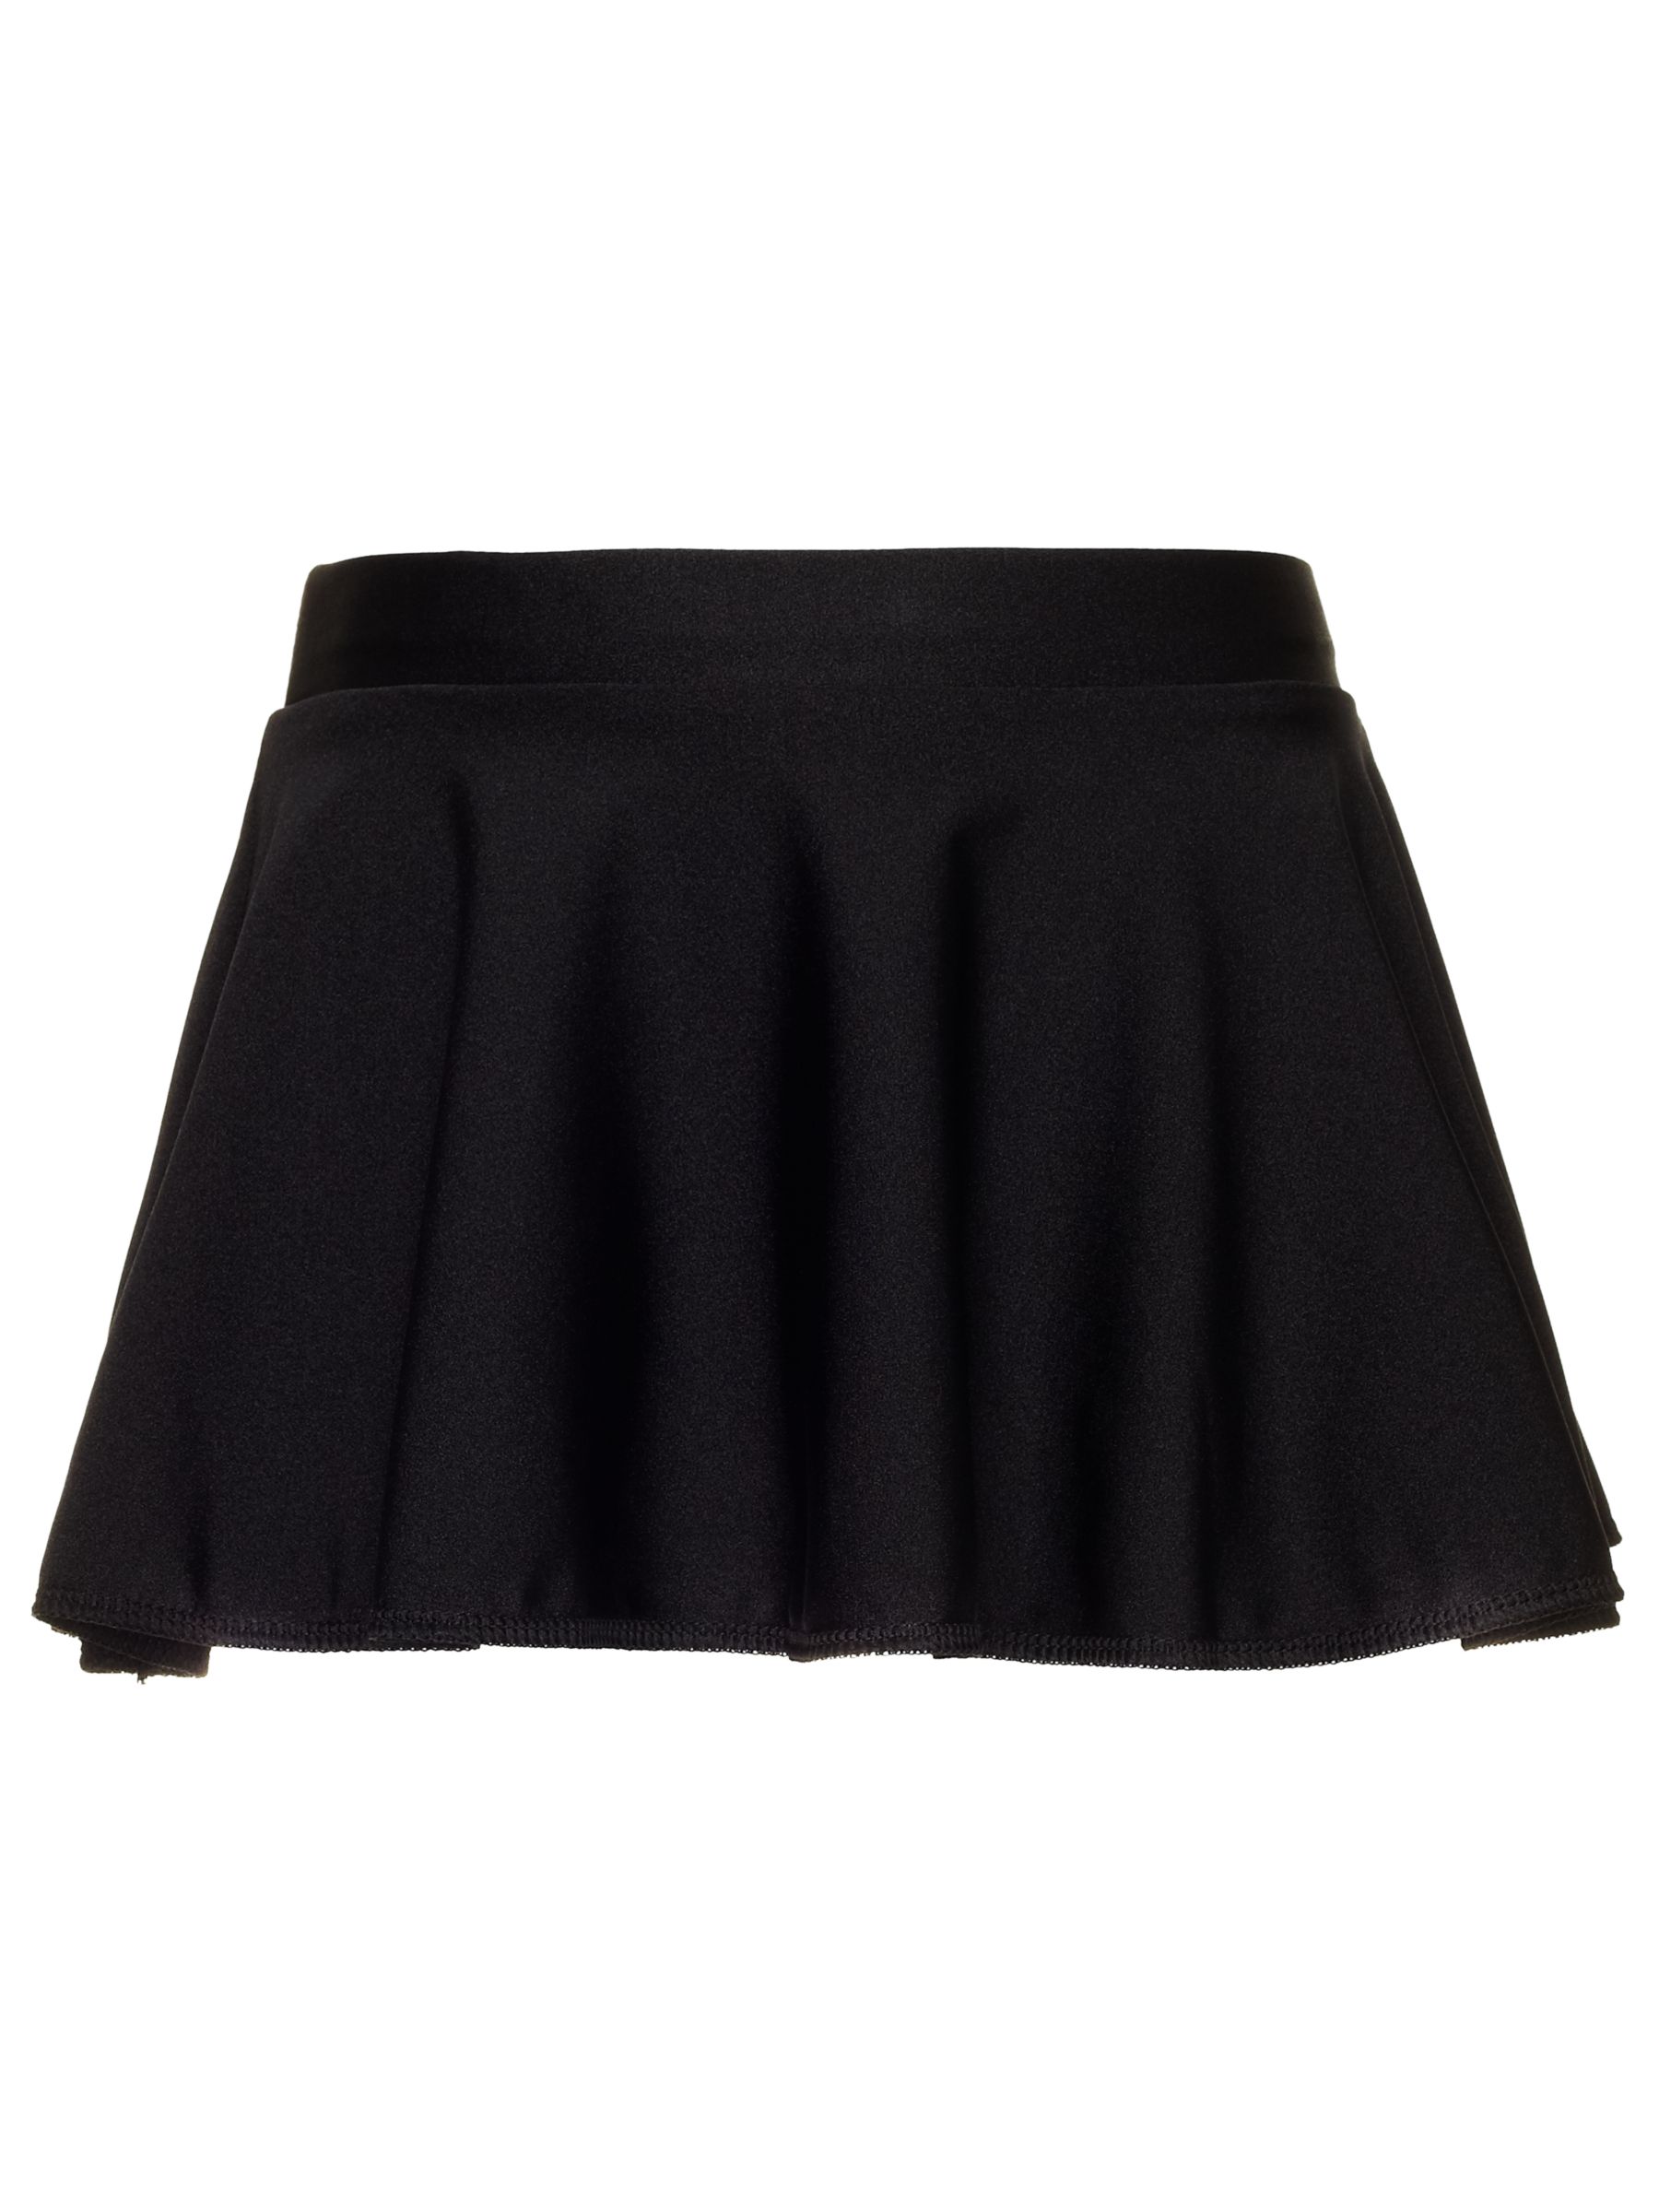 Black Dance Skirt 61